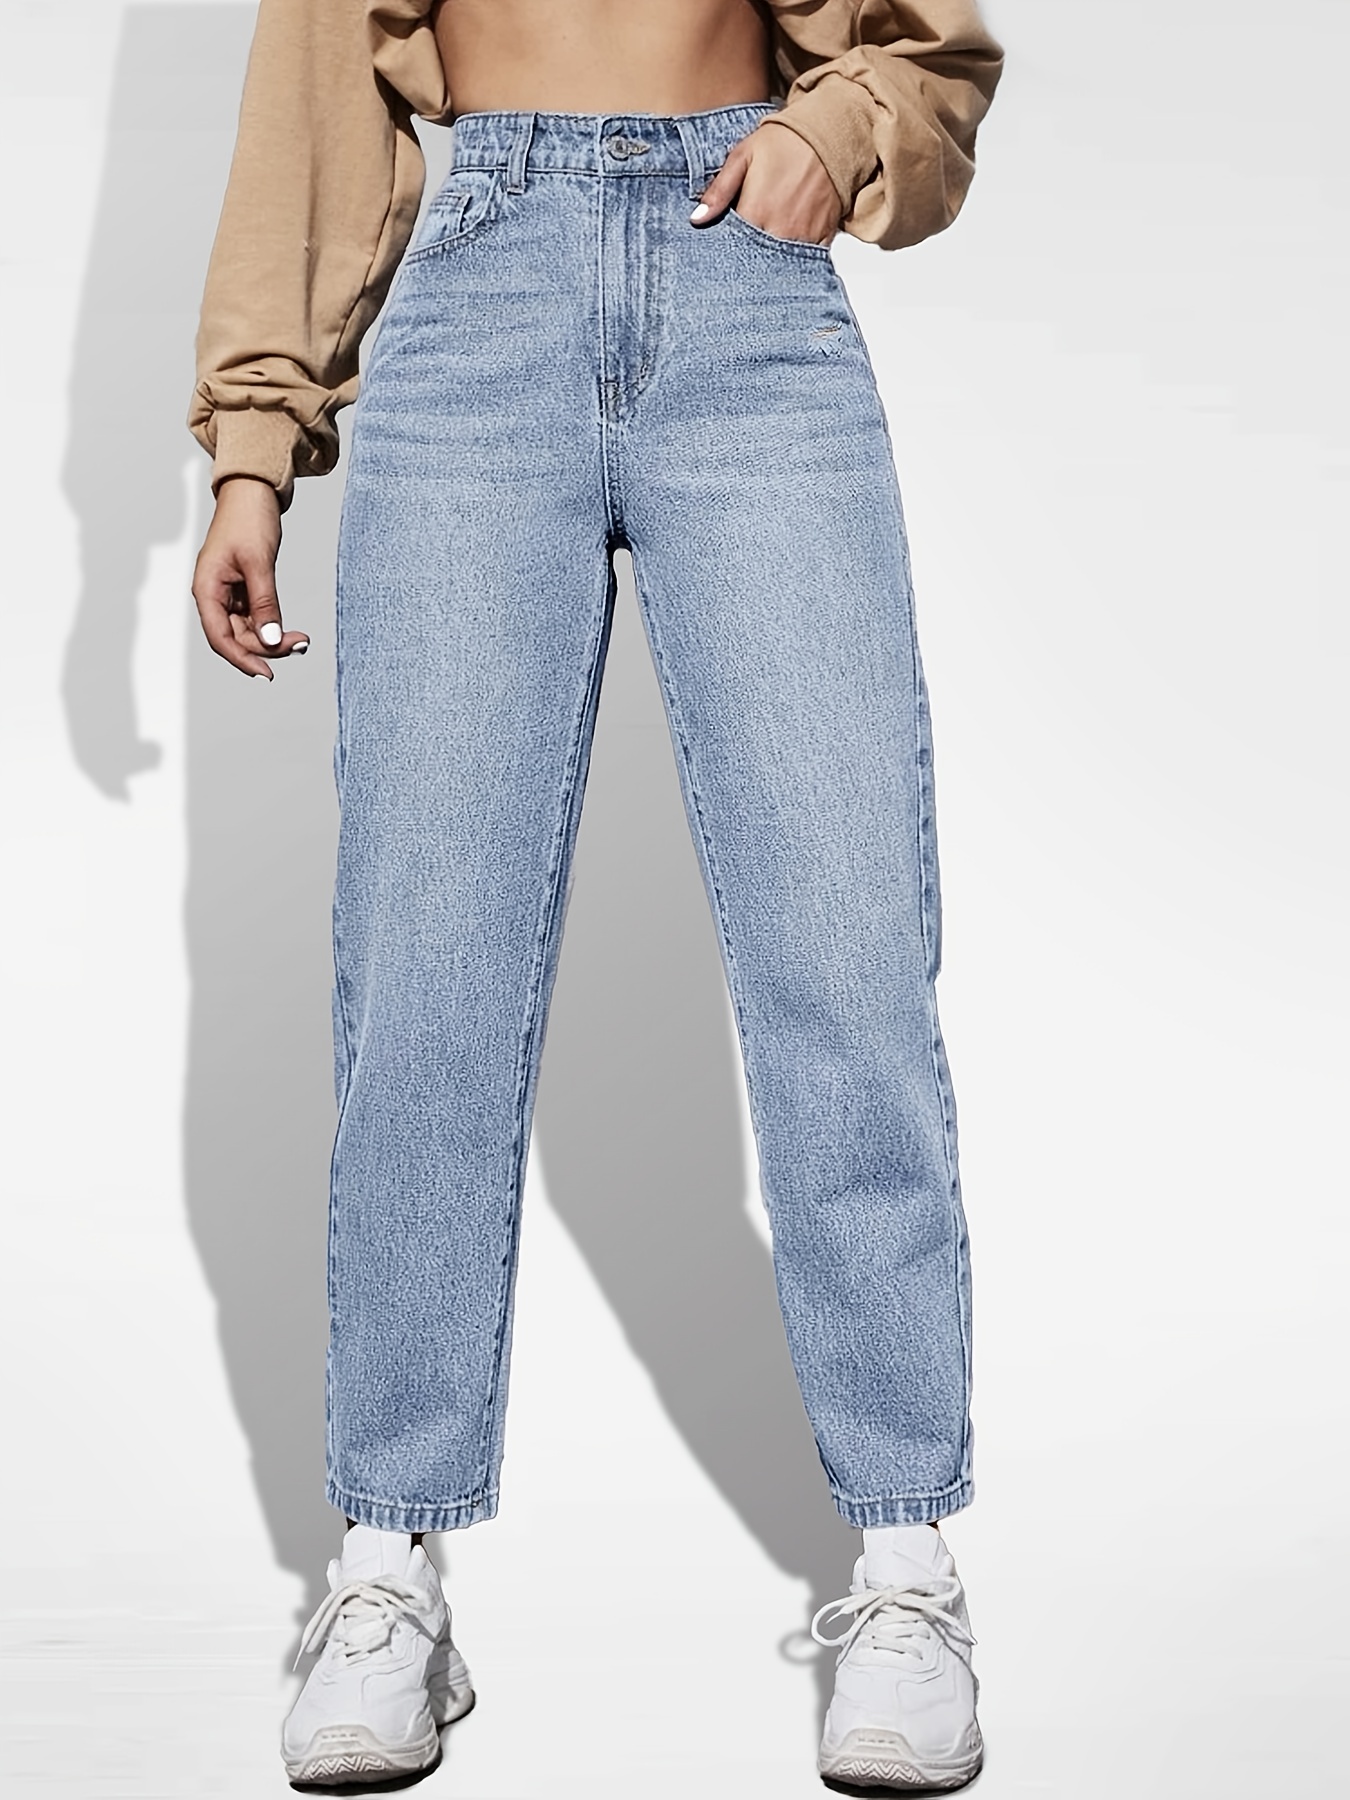 Jeans Rectos De Talle Alto * Pantalones De Mezclilla De Tiro Alto Sueltos  Con Múltiples Bolsillos, Jeans Y Ropa De Mujer